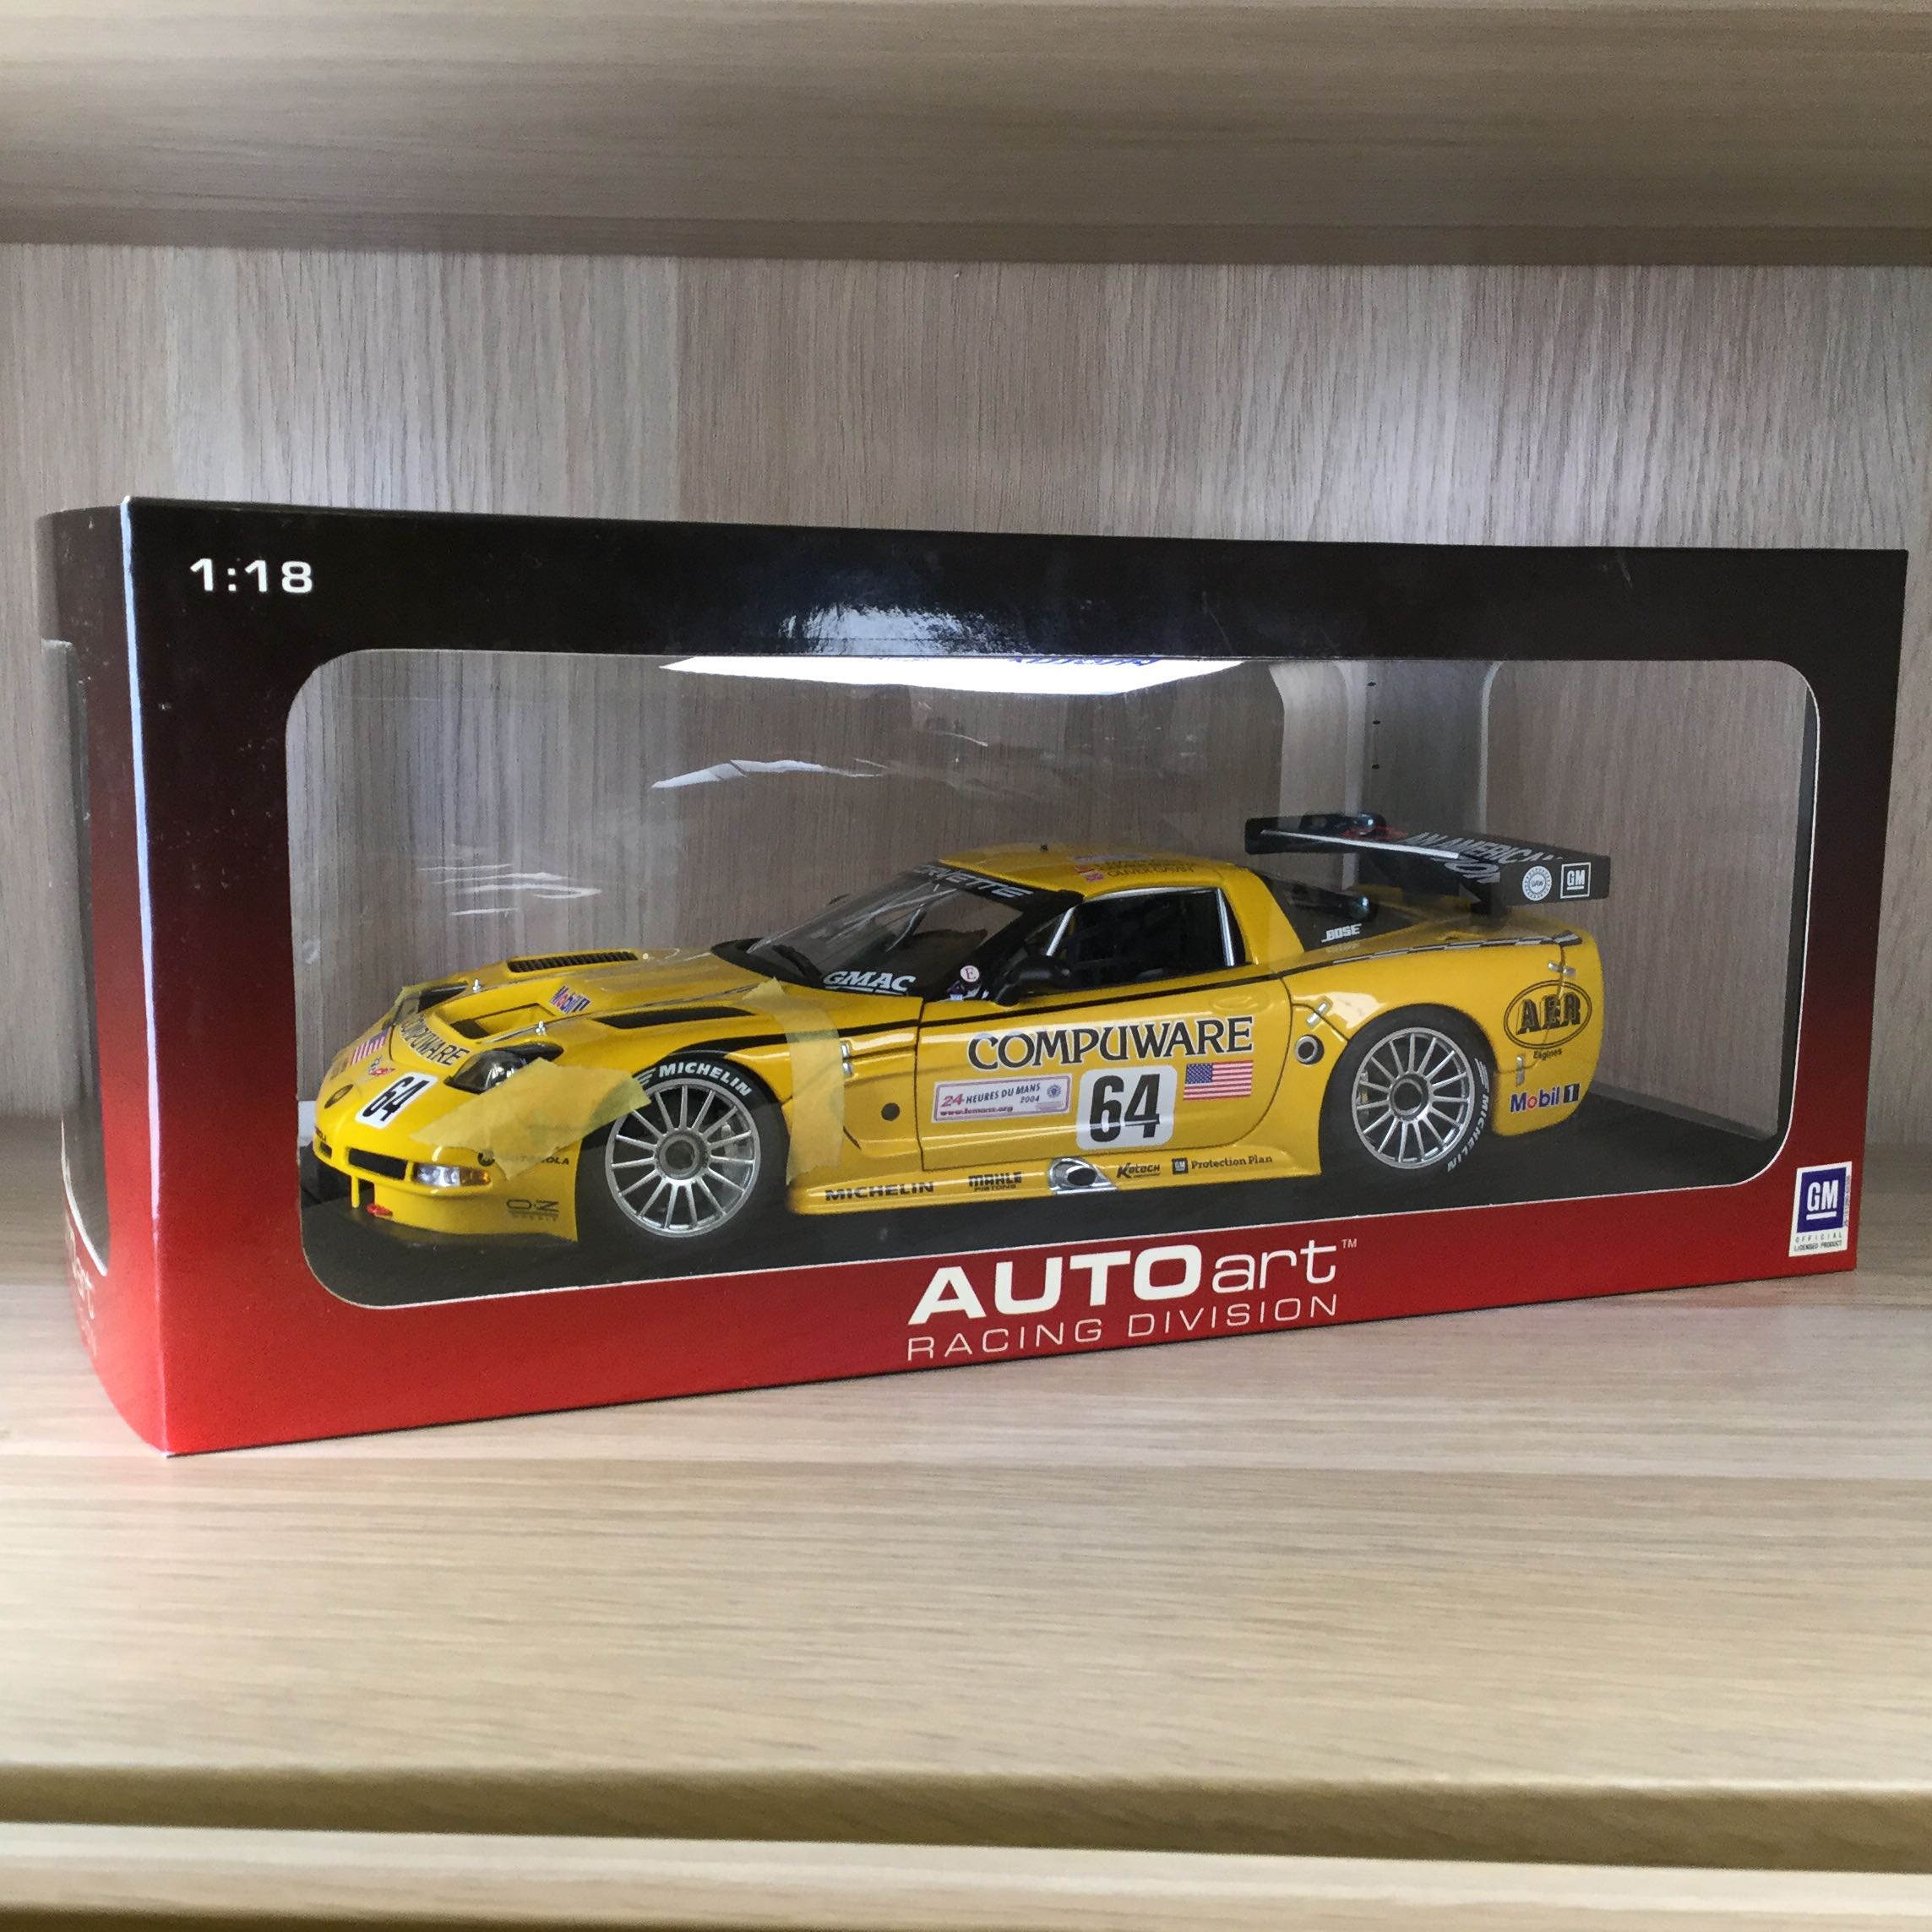 1/18 AutoArt Chevrolet Corvette C5-R Le Mans #64, 興趣及遊戲, 玩具